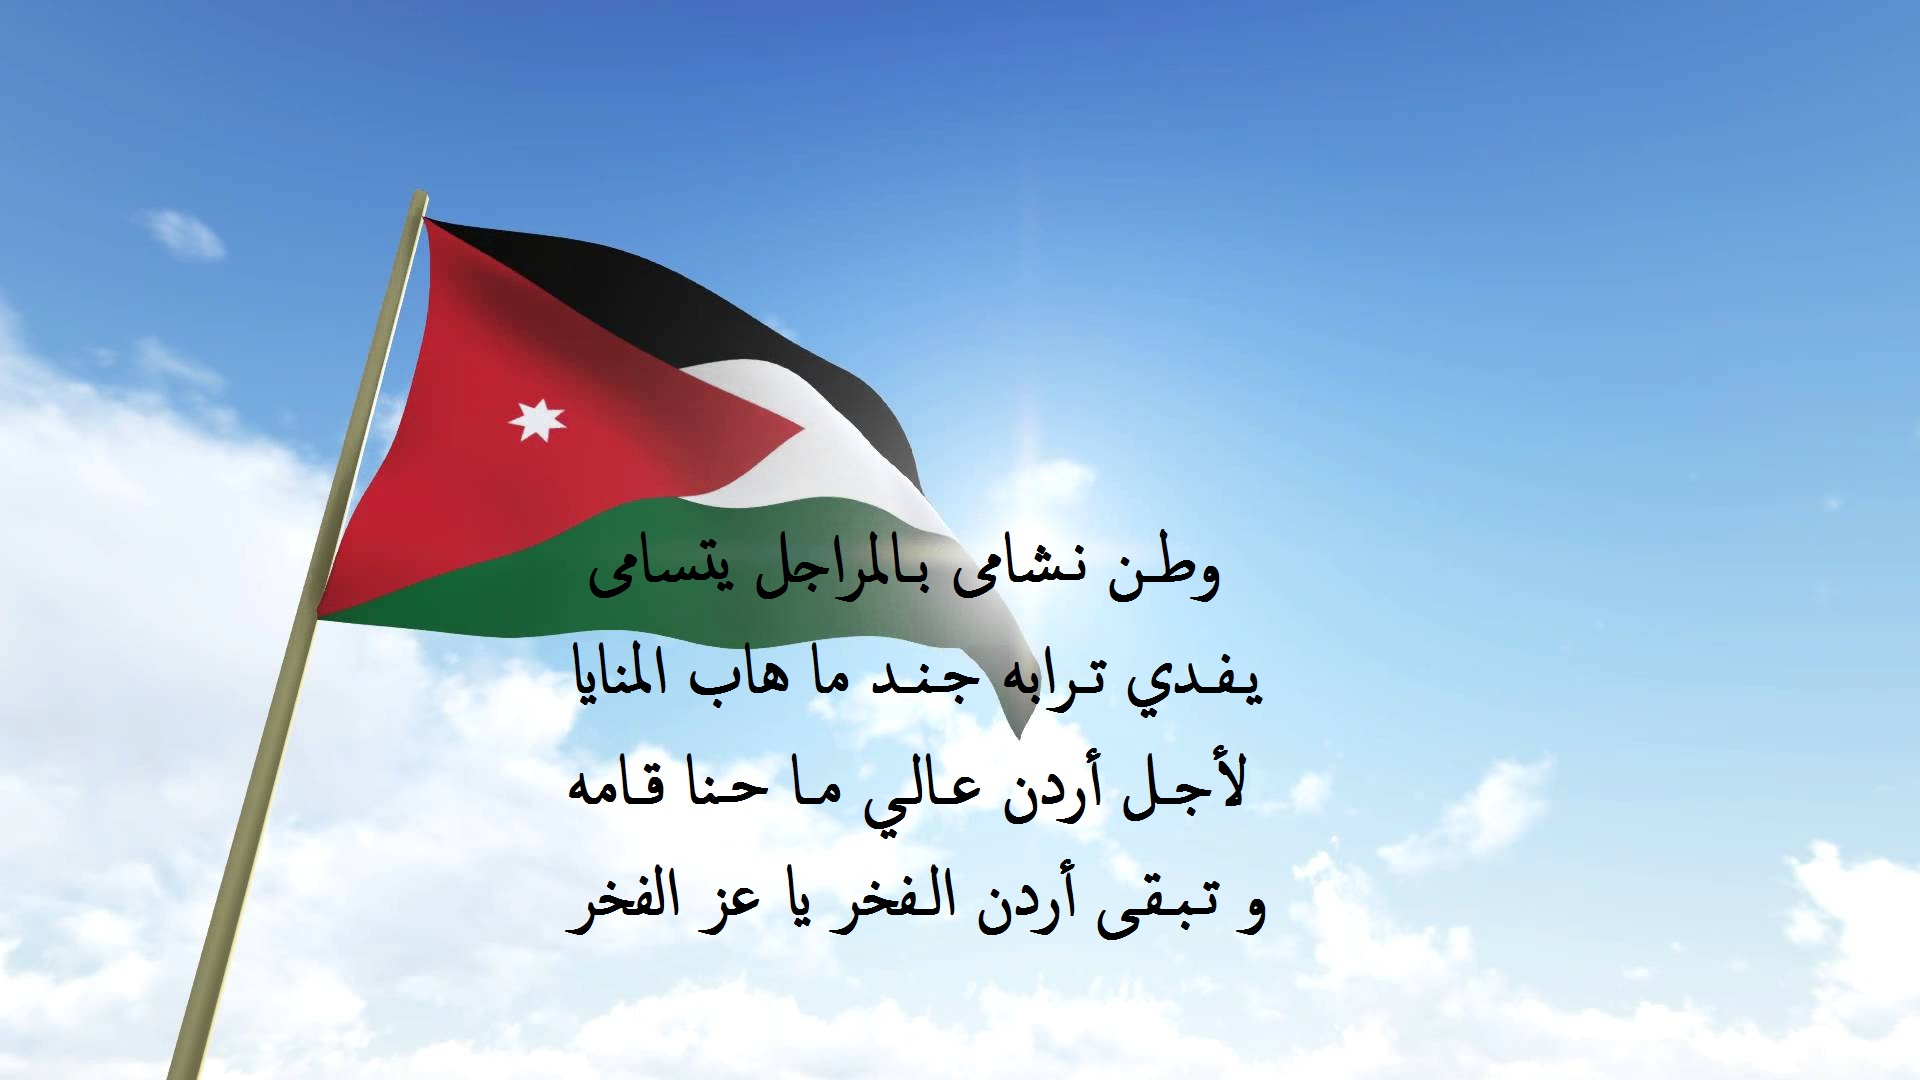 أبيات شع عن حب الوطن مكتوبة على علم الأردن.